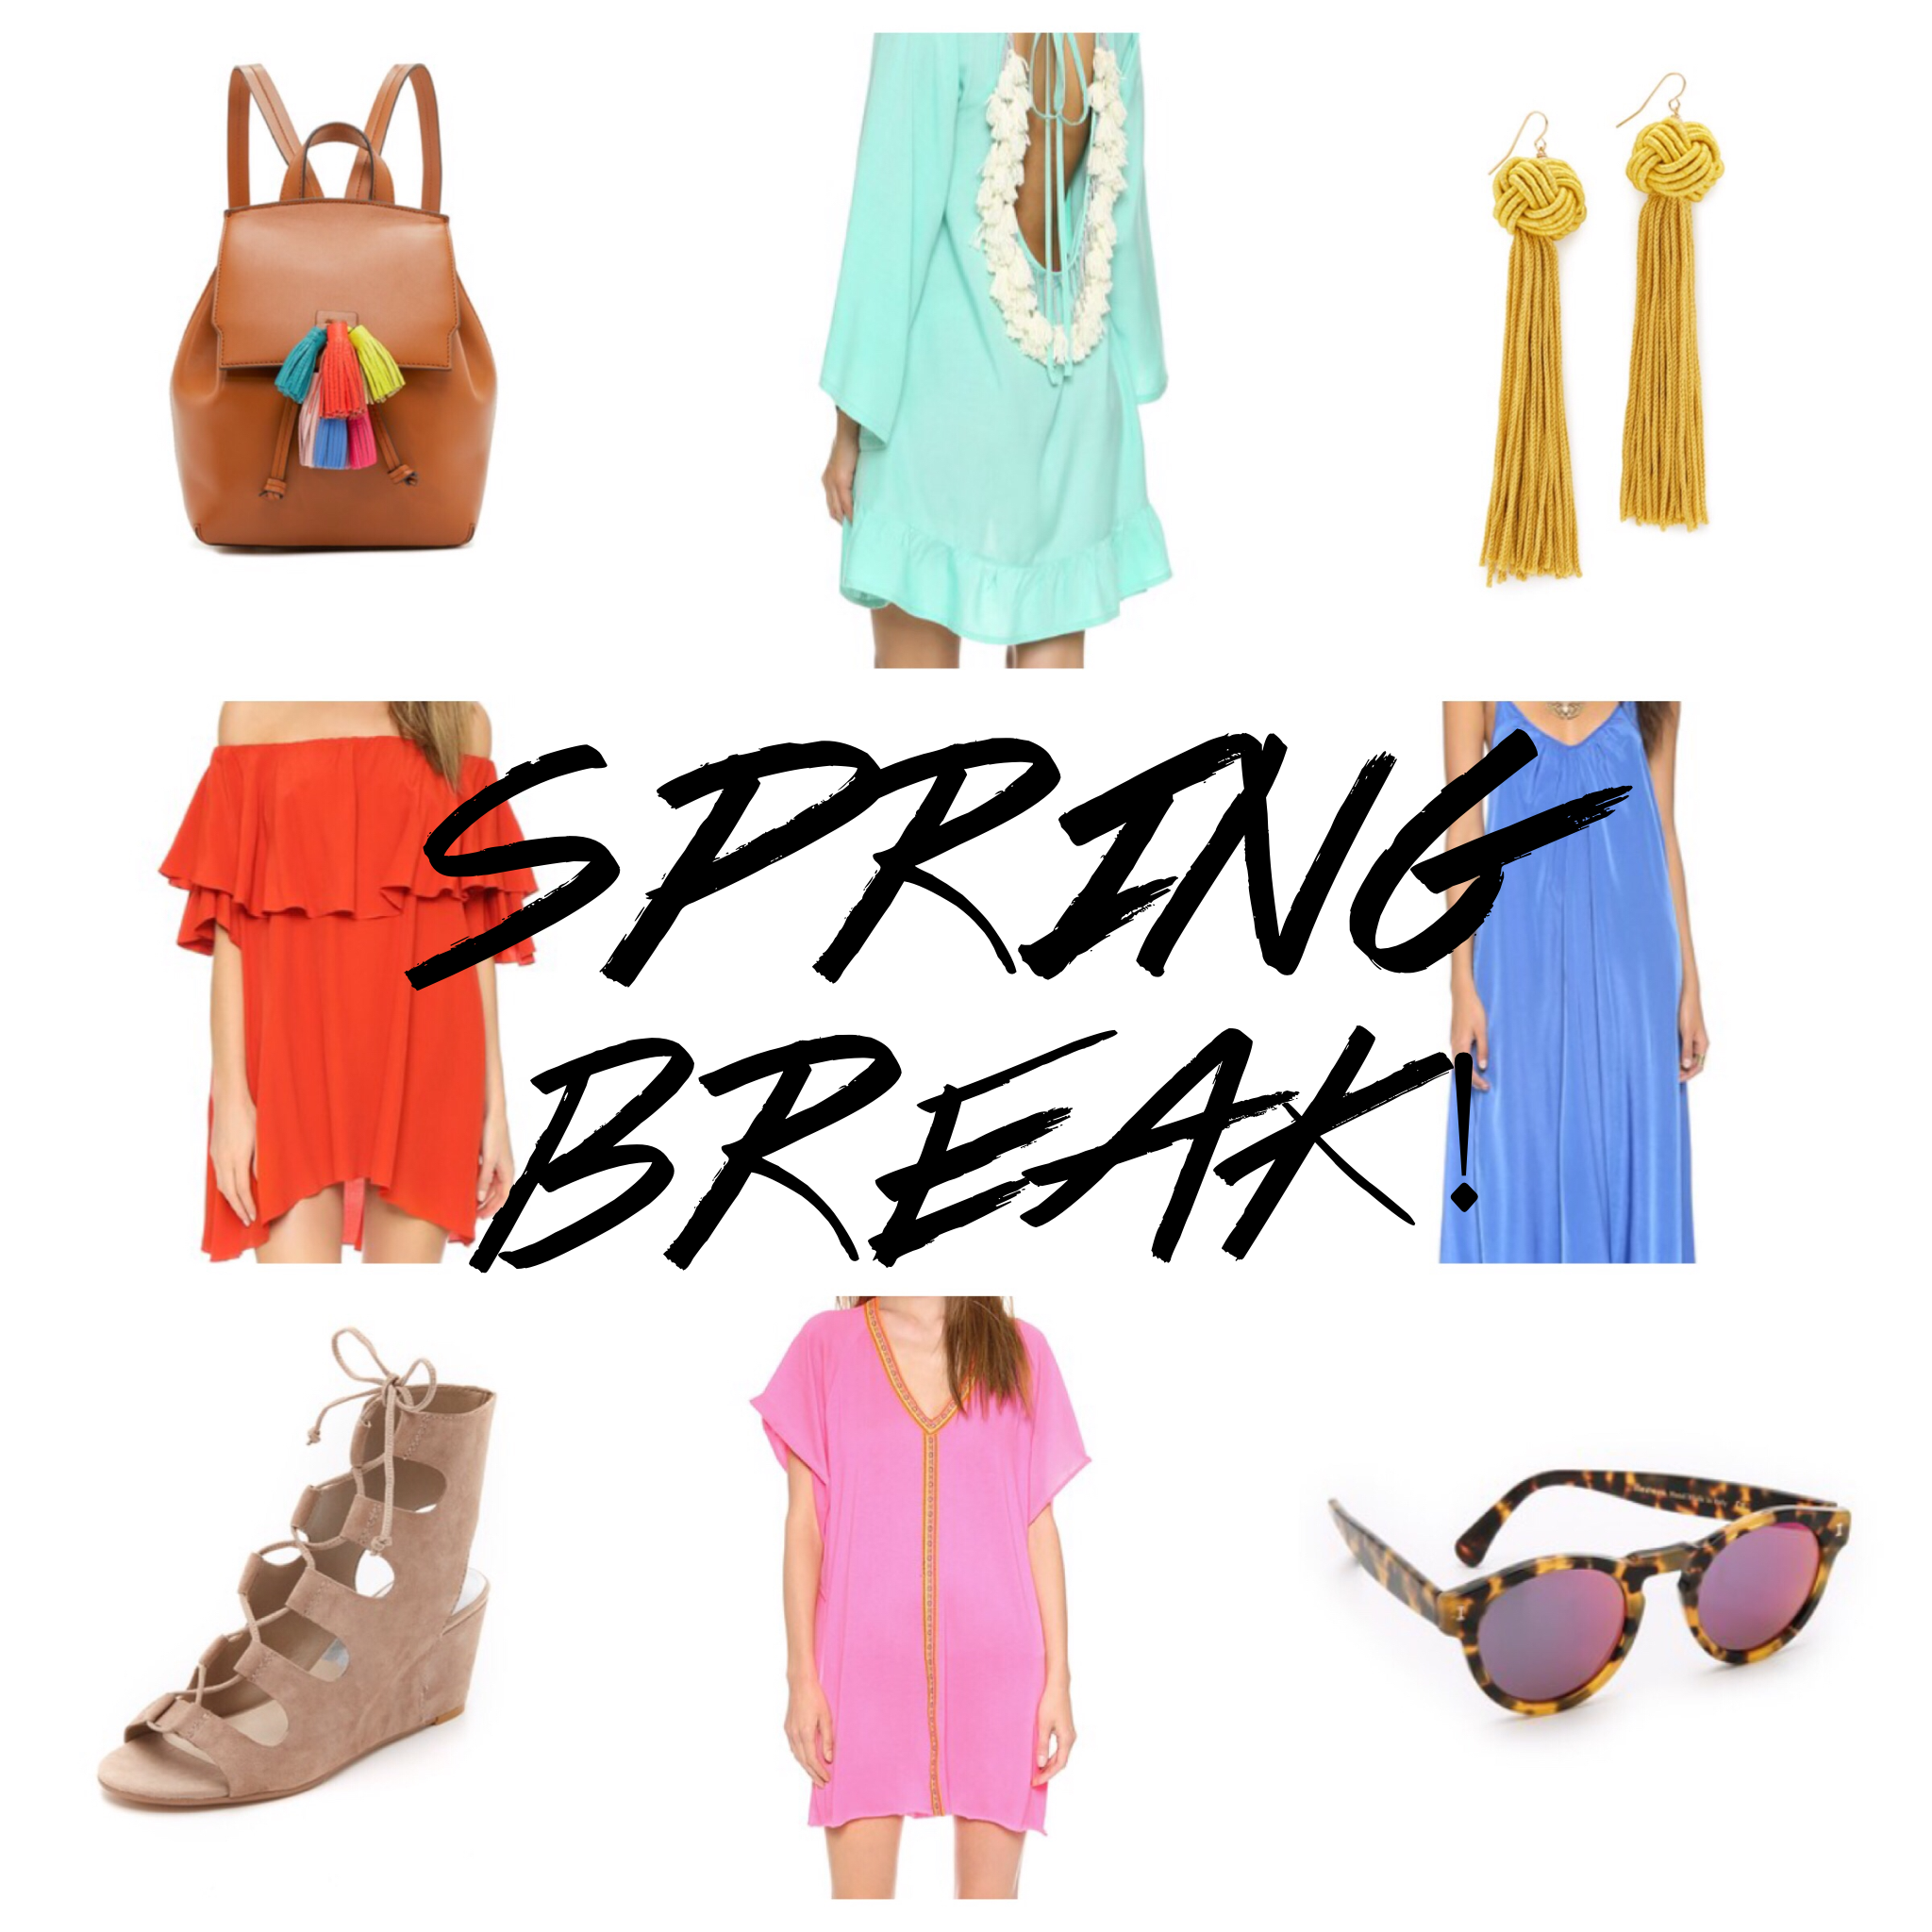 Spring Break Shopping